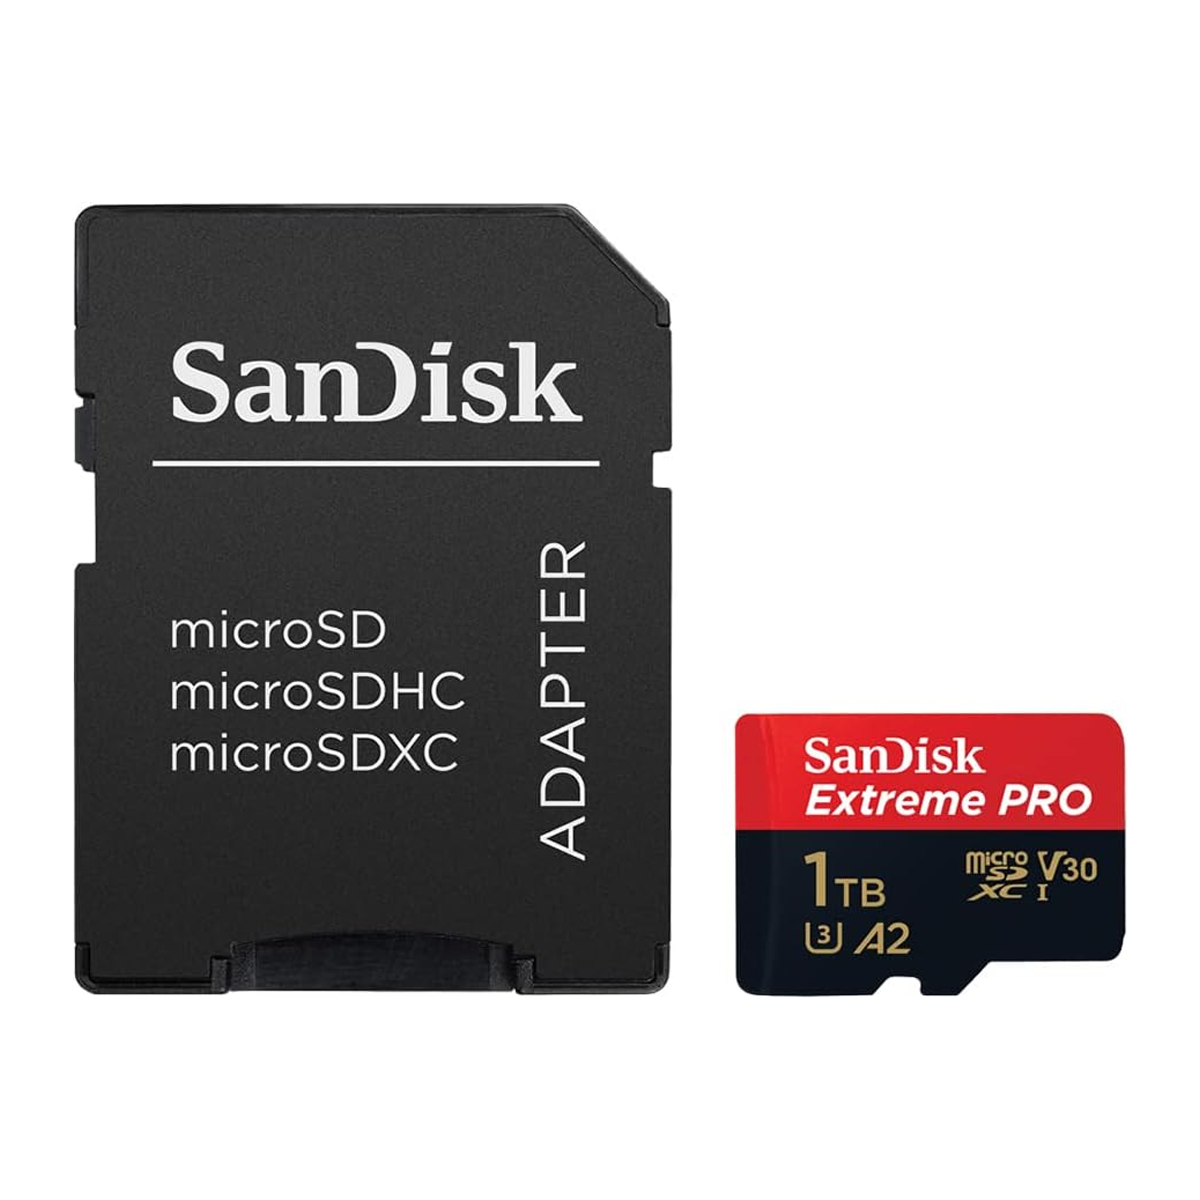 کارت حافظه microSDXC سن دیسک مدل Extreme PRO کلاس A2 استاندارد UHS-I U3 سرعت 200MBs ظرفیت 1 ترابایت به همراه آداپتور